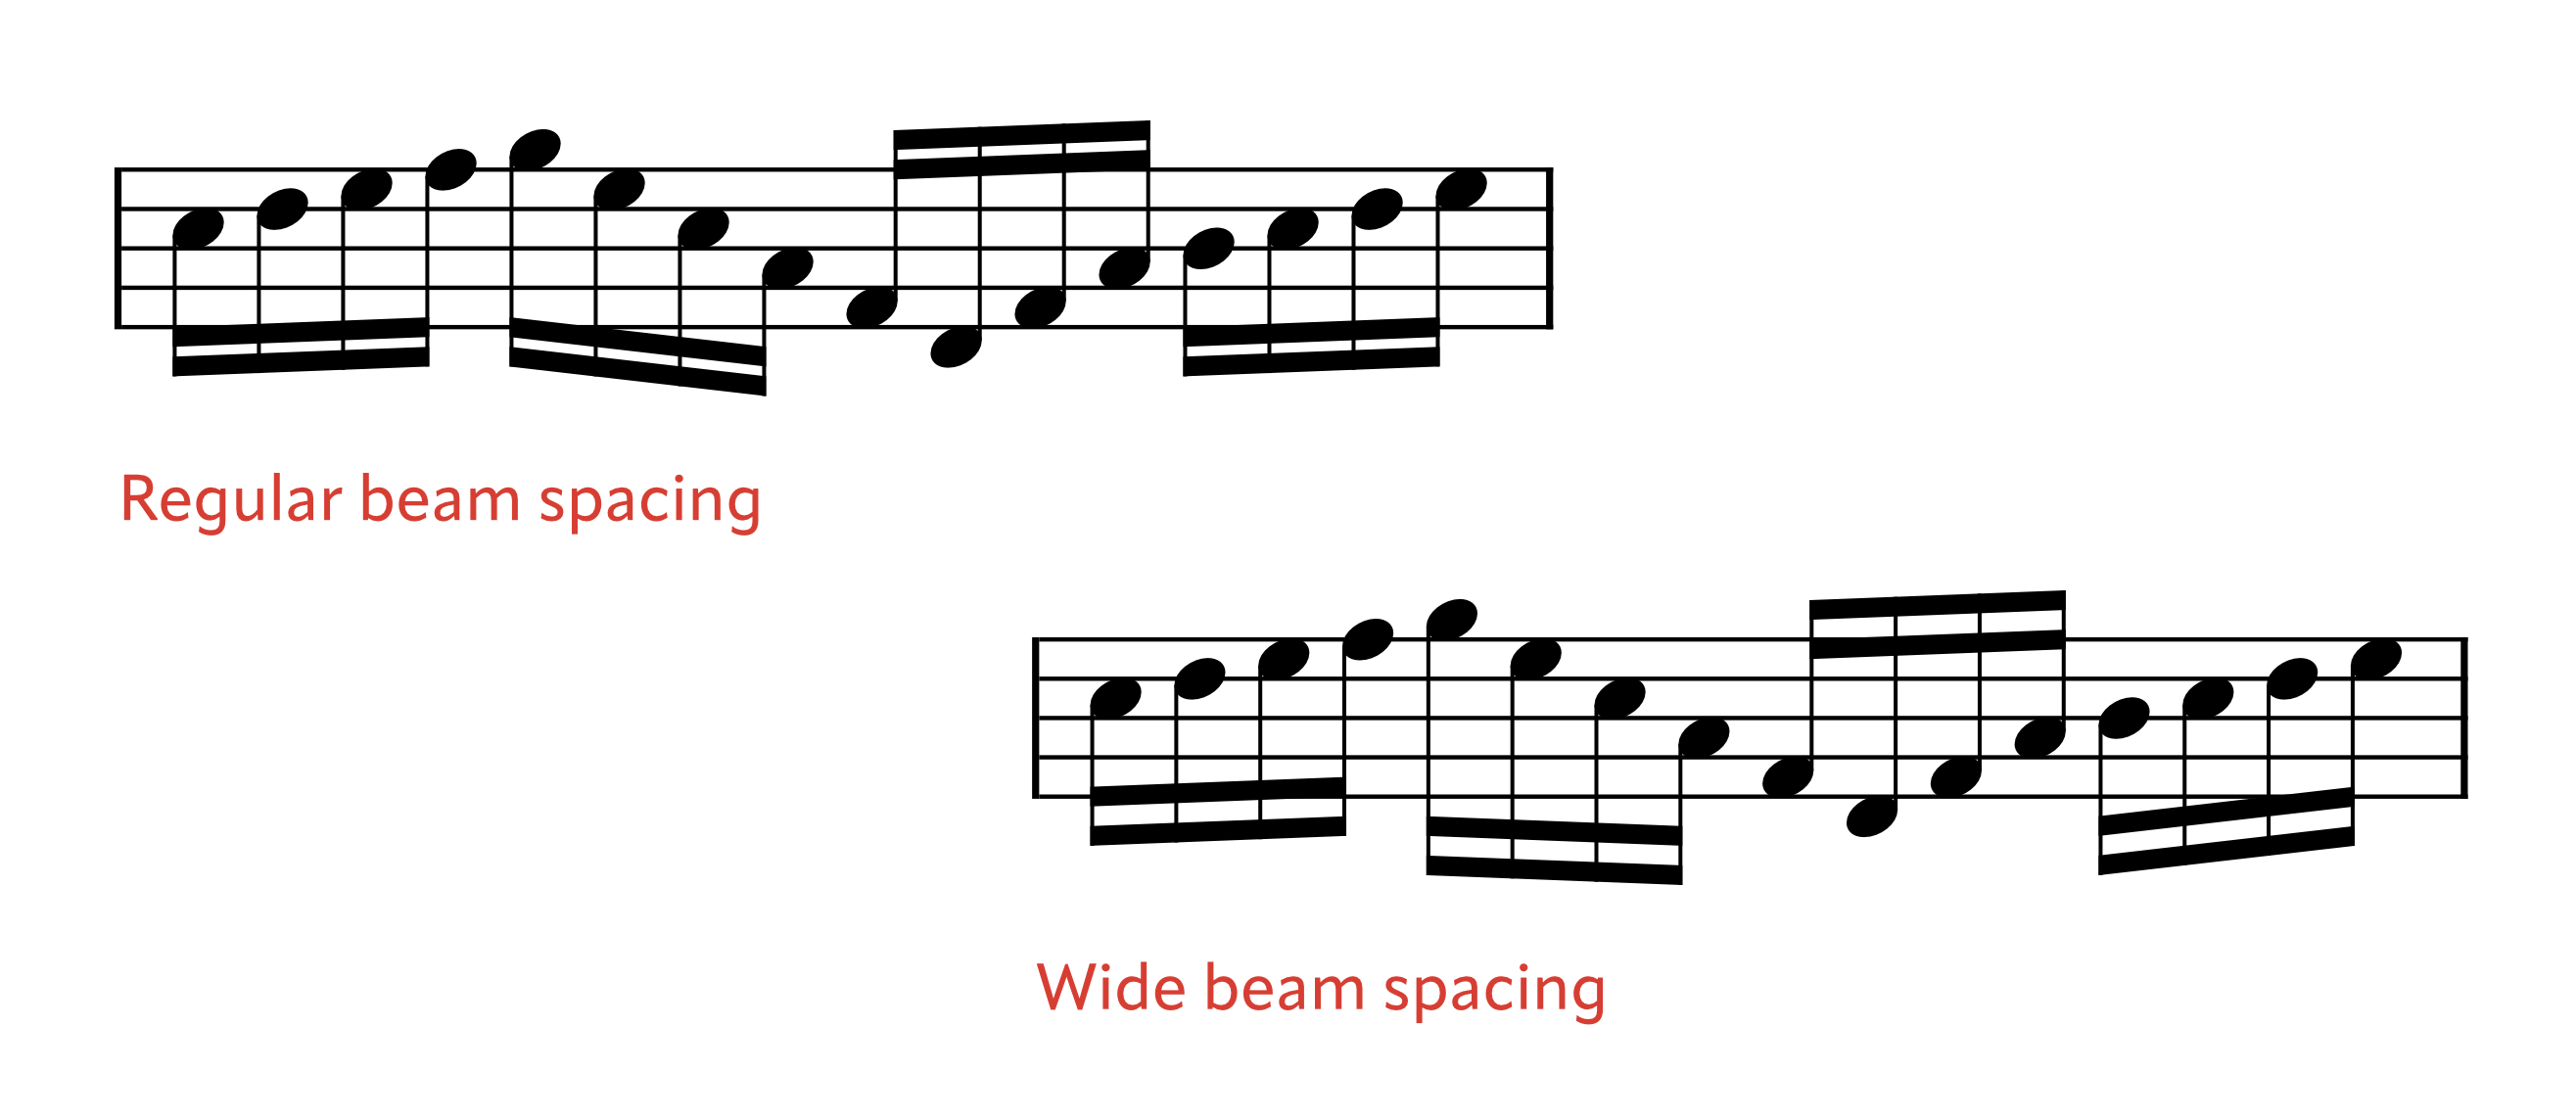 Beam spacing options